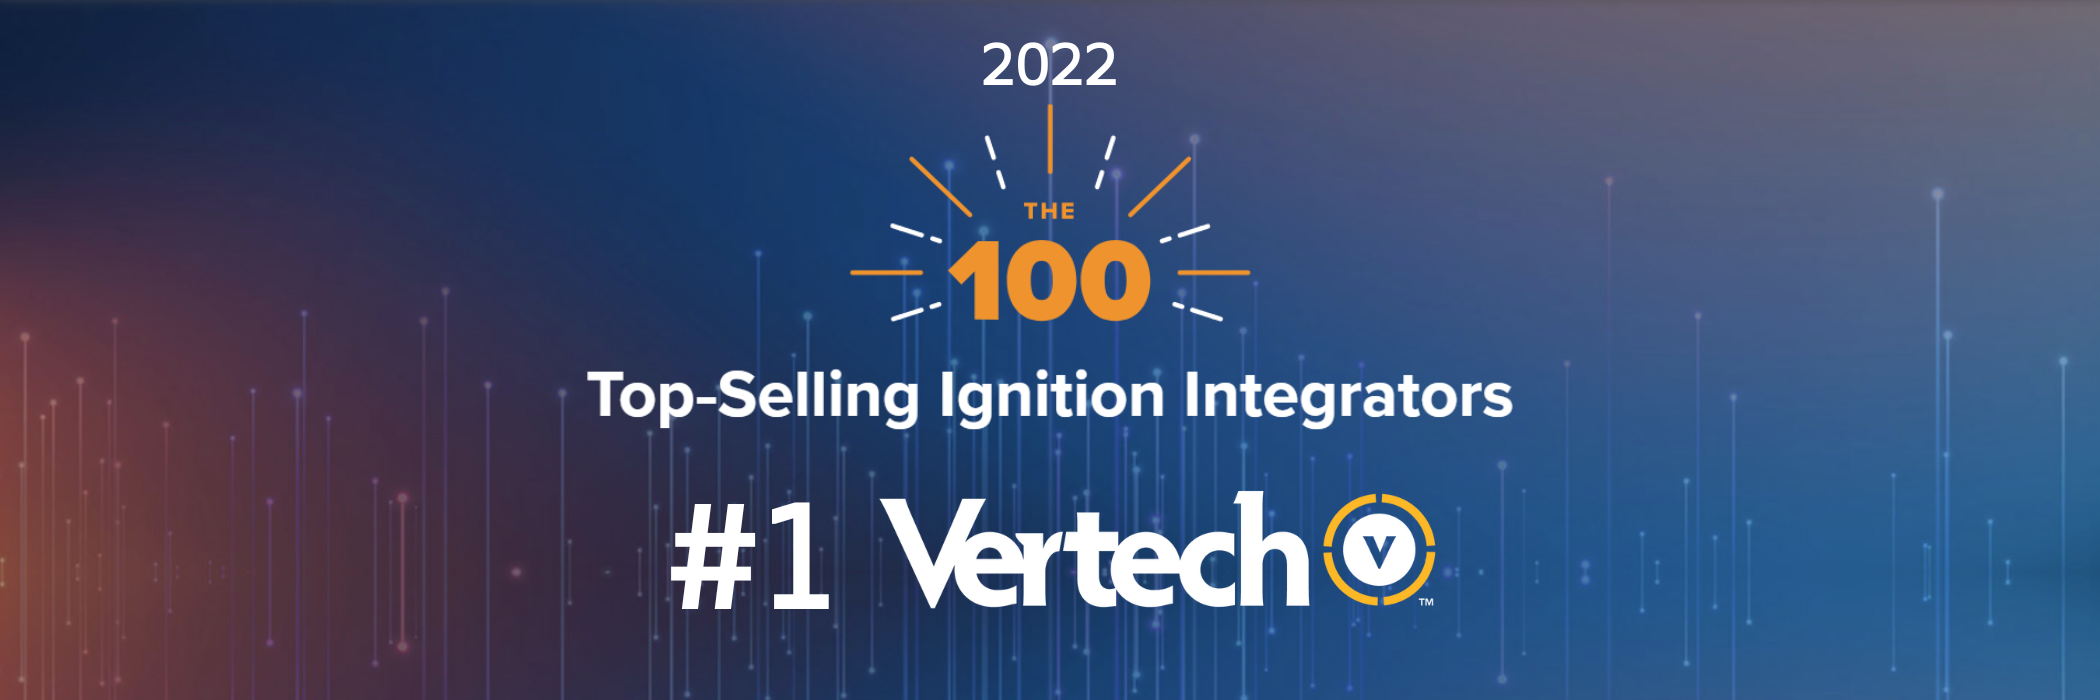 Vertech is No 1 2022